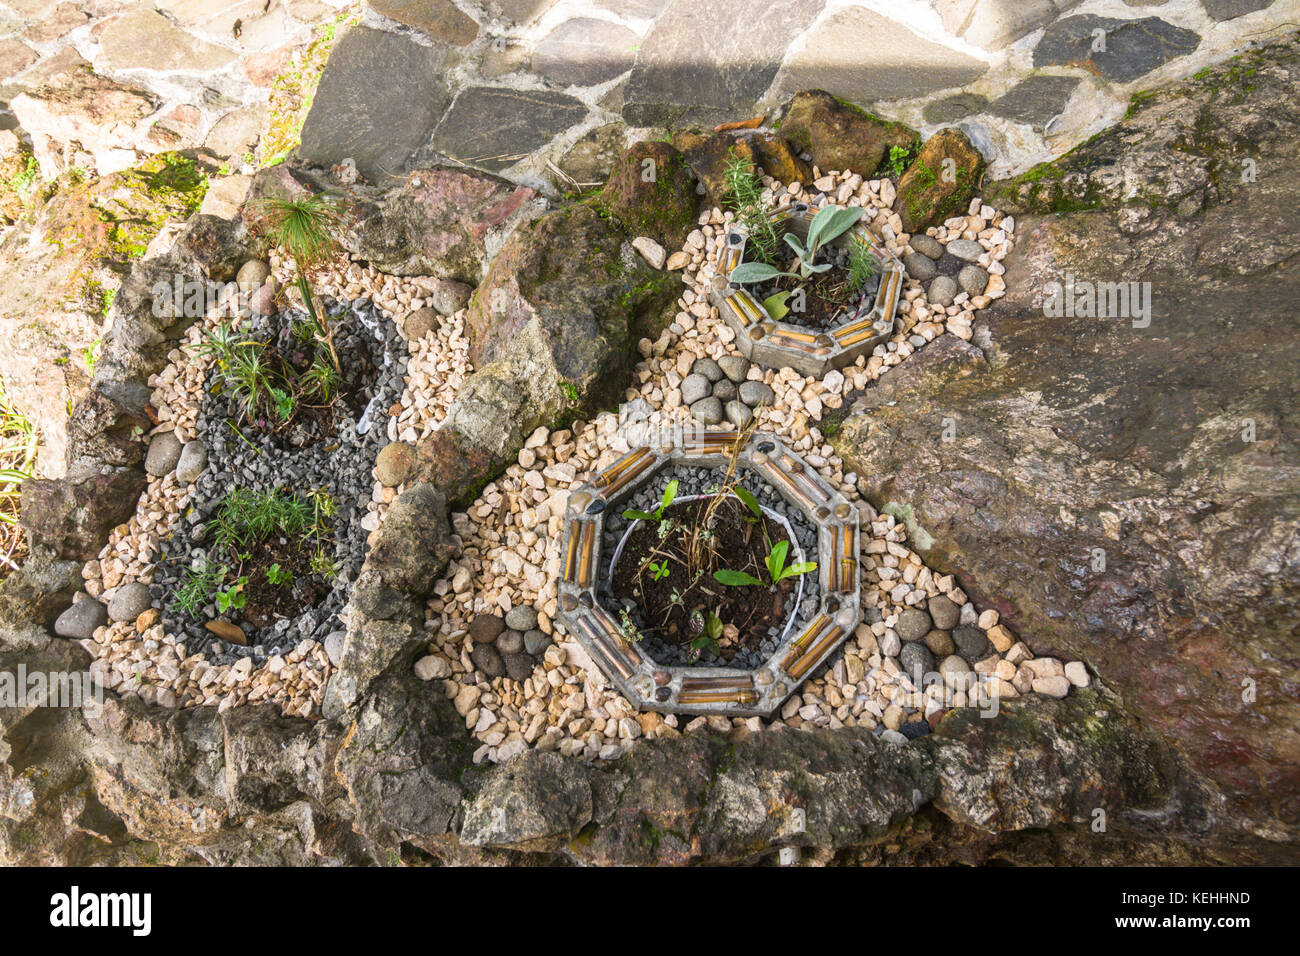 Jardín paisajismo ideas creativas jardín de piedras pequeñas Foto de stock